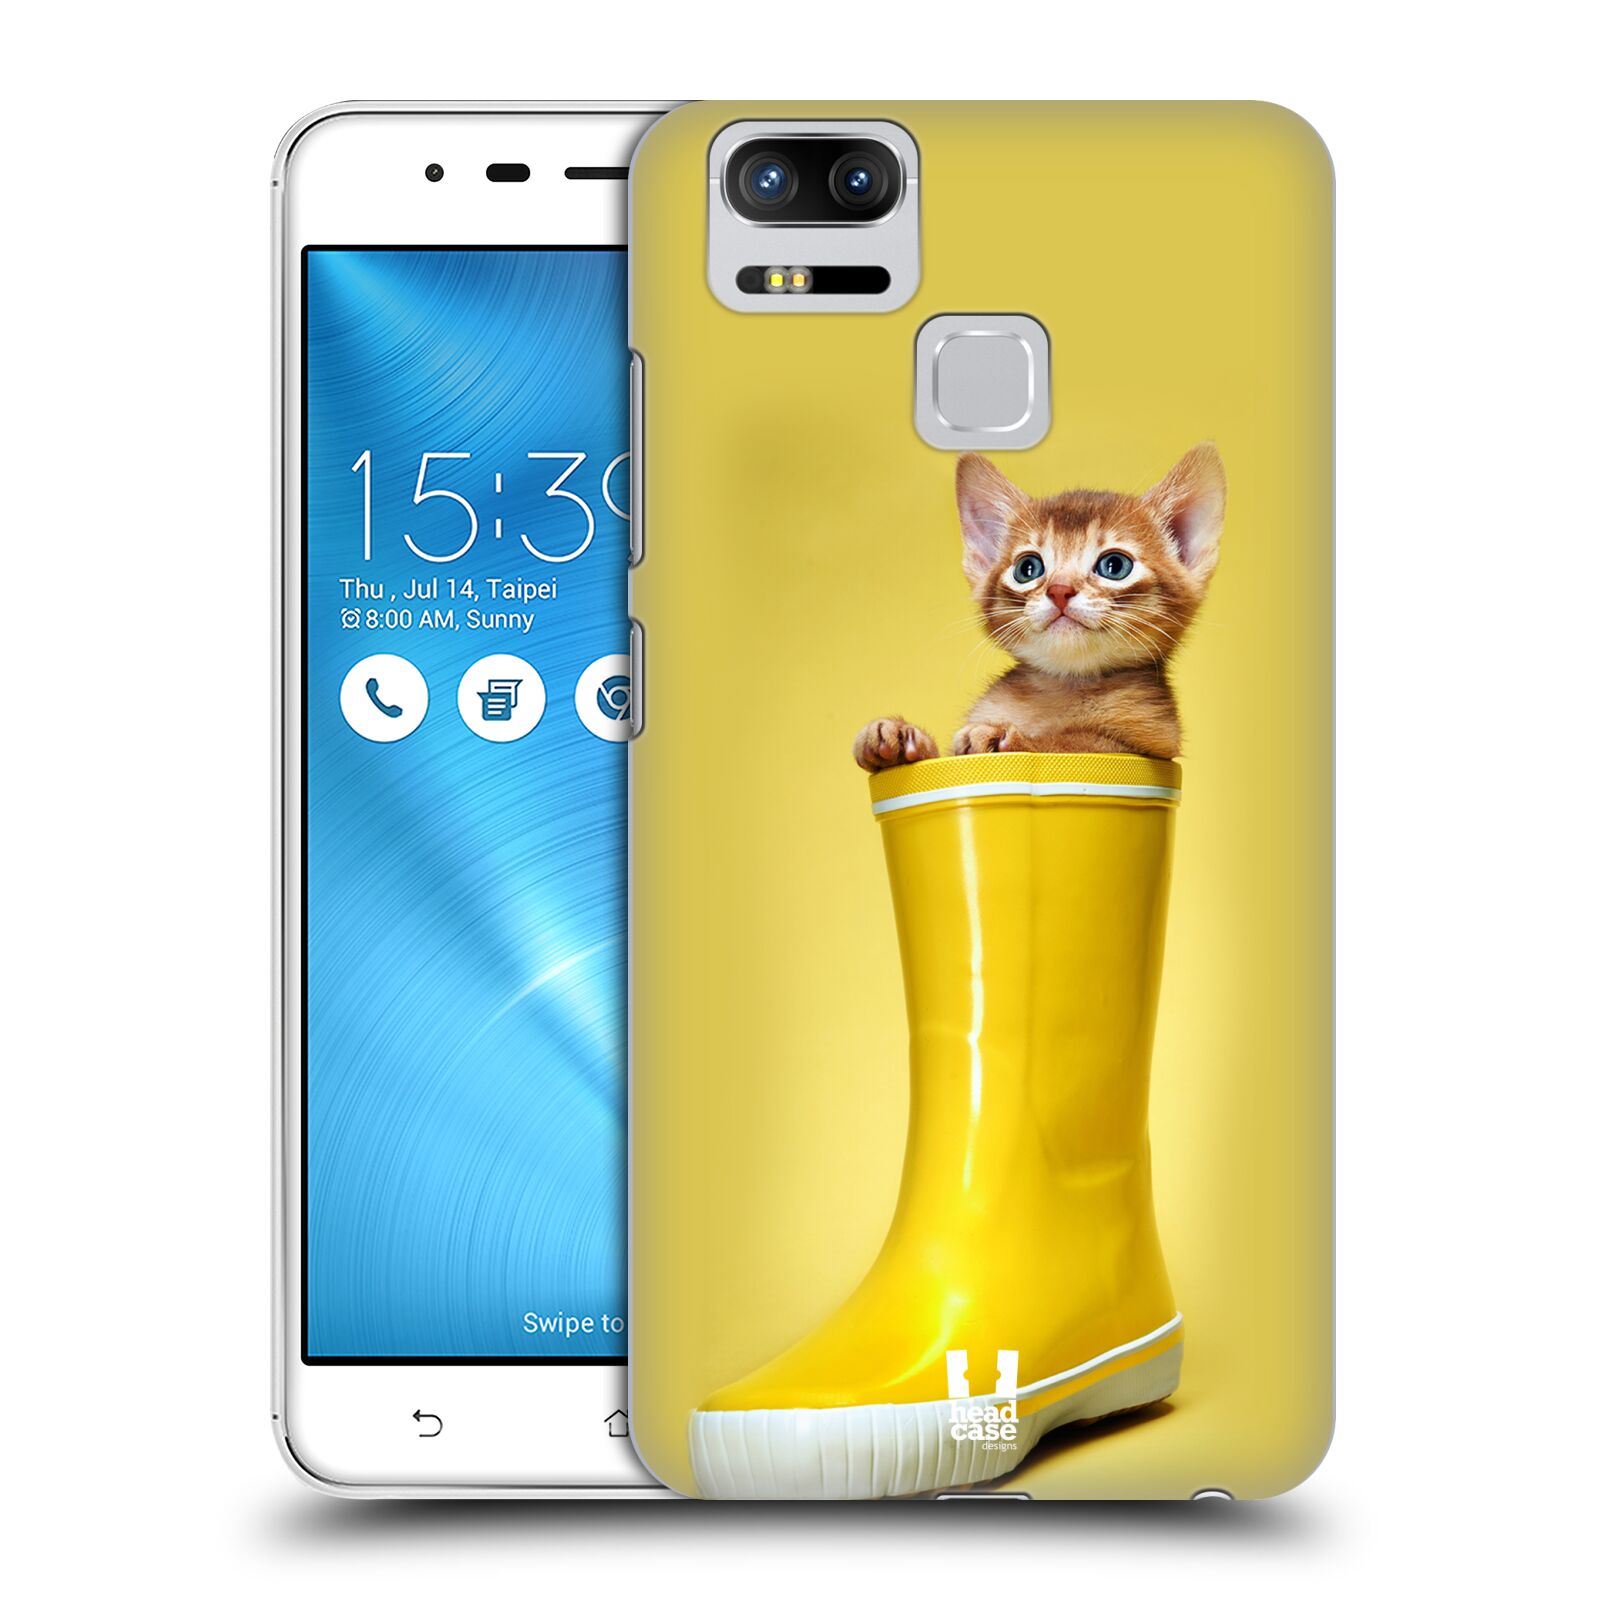 HEAD CASE plastový obal na mobil Asus Zenfone 3 Zoom ZE553KL vzor Legrační zvířátka kotě v botě žlutá